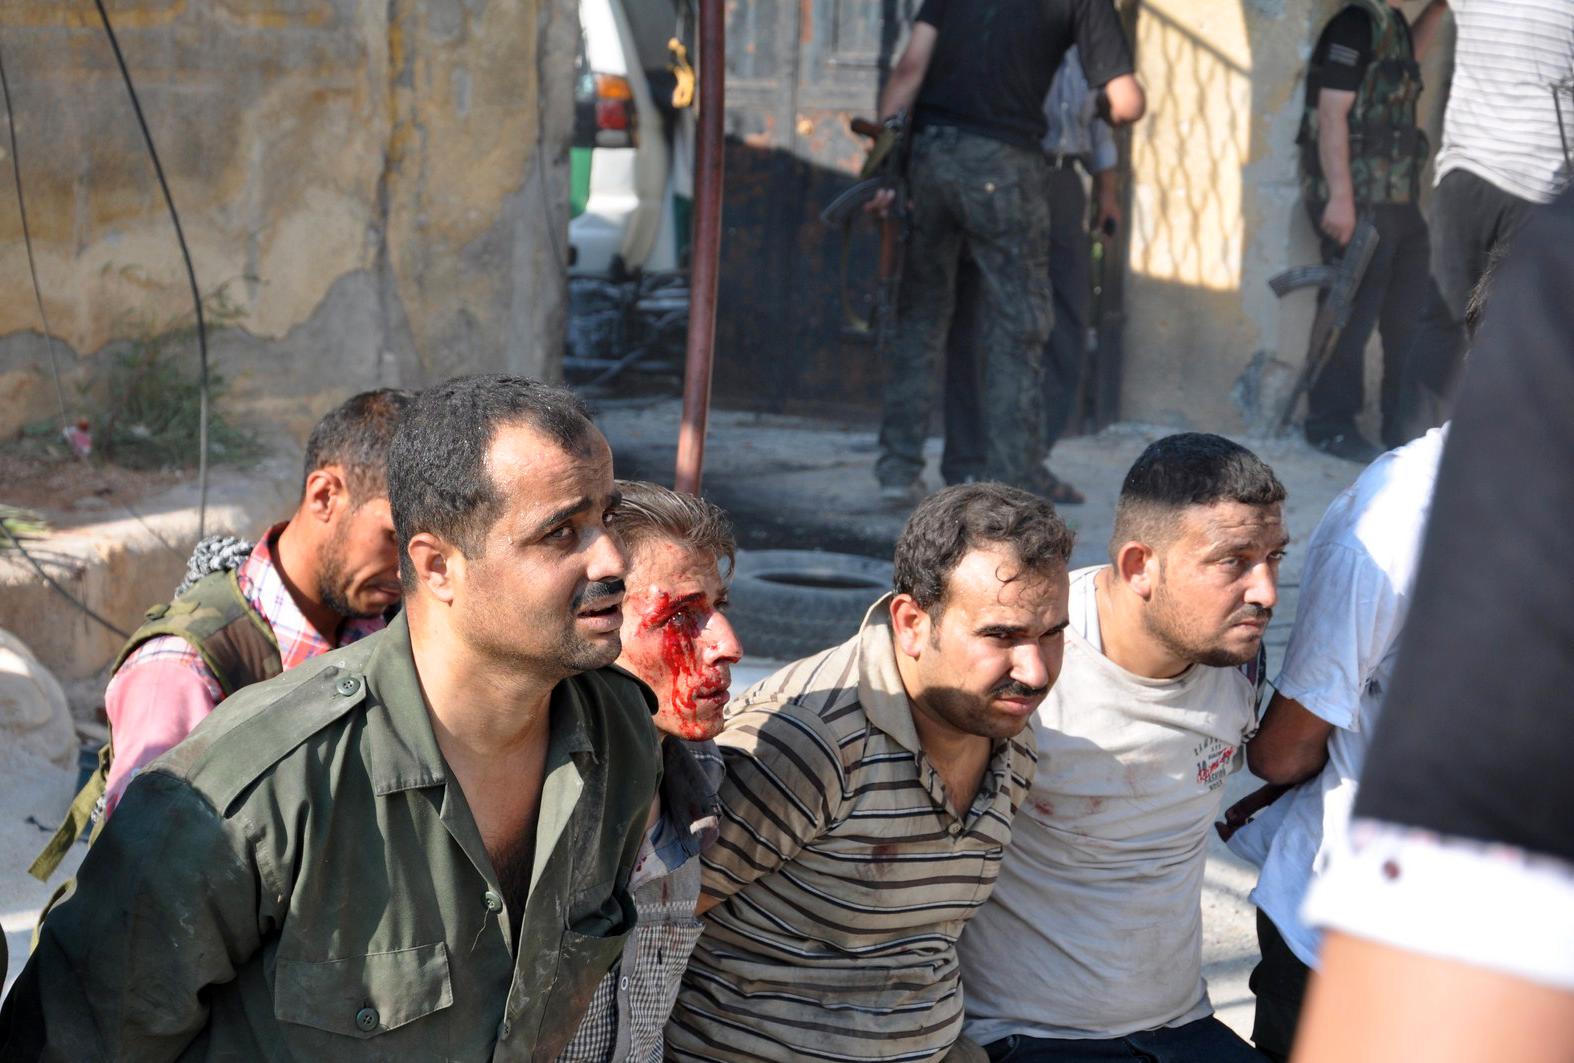 Polismän i Shaar-distriktet som tagits till fånga av av rebeller efter att polisstationen stormats.